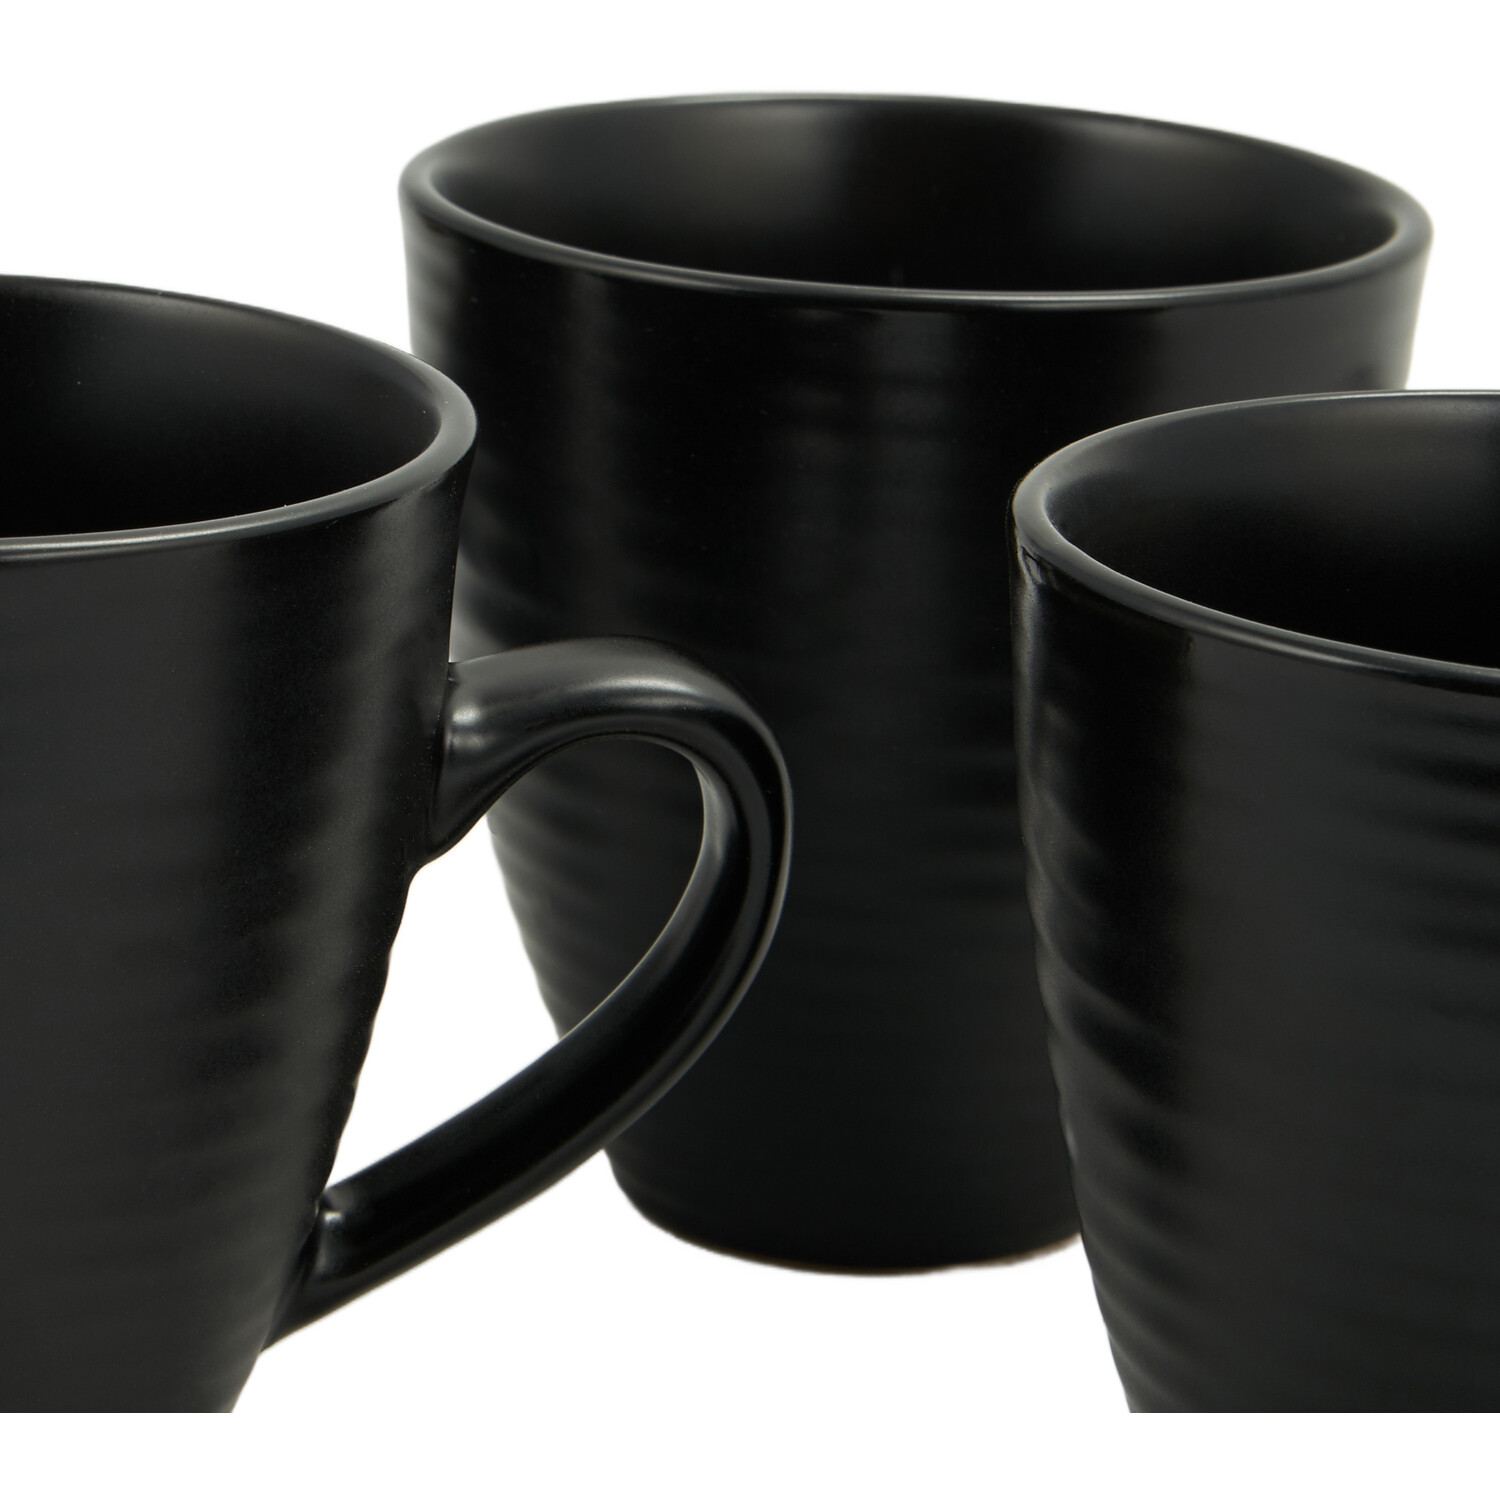 Set of 4 Nera Ribbed Mugs - Black Image 4